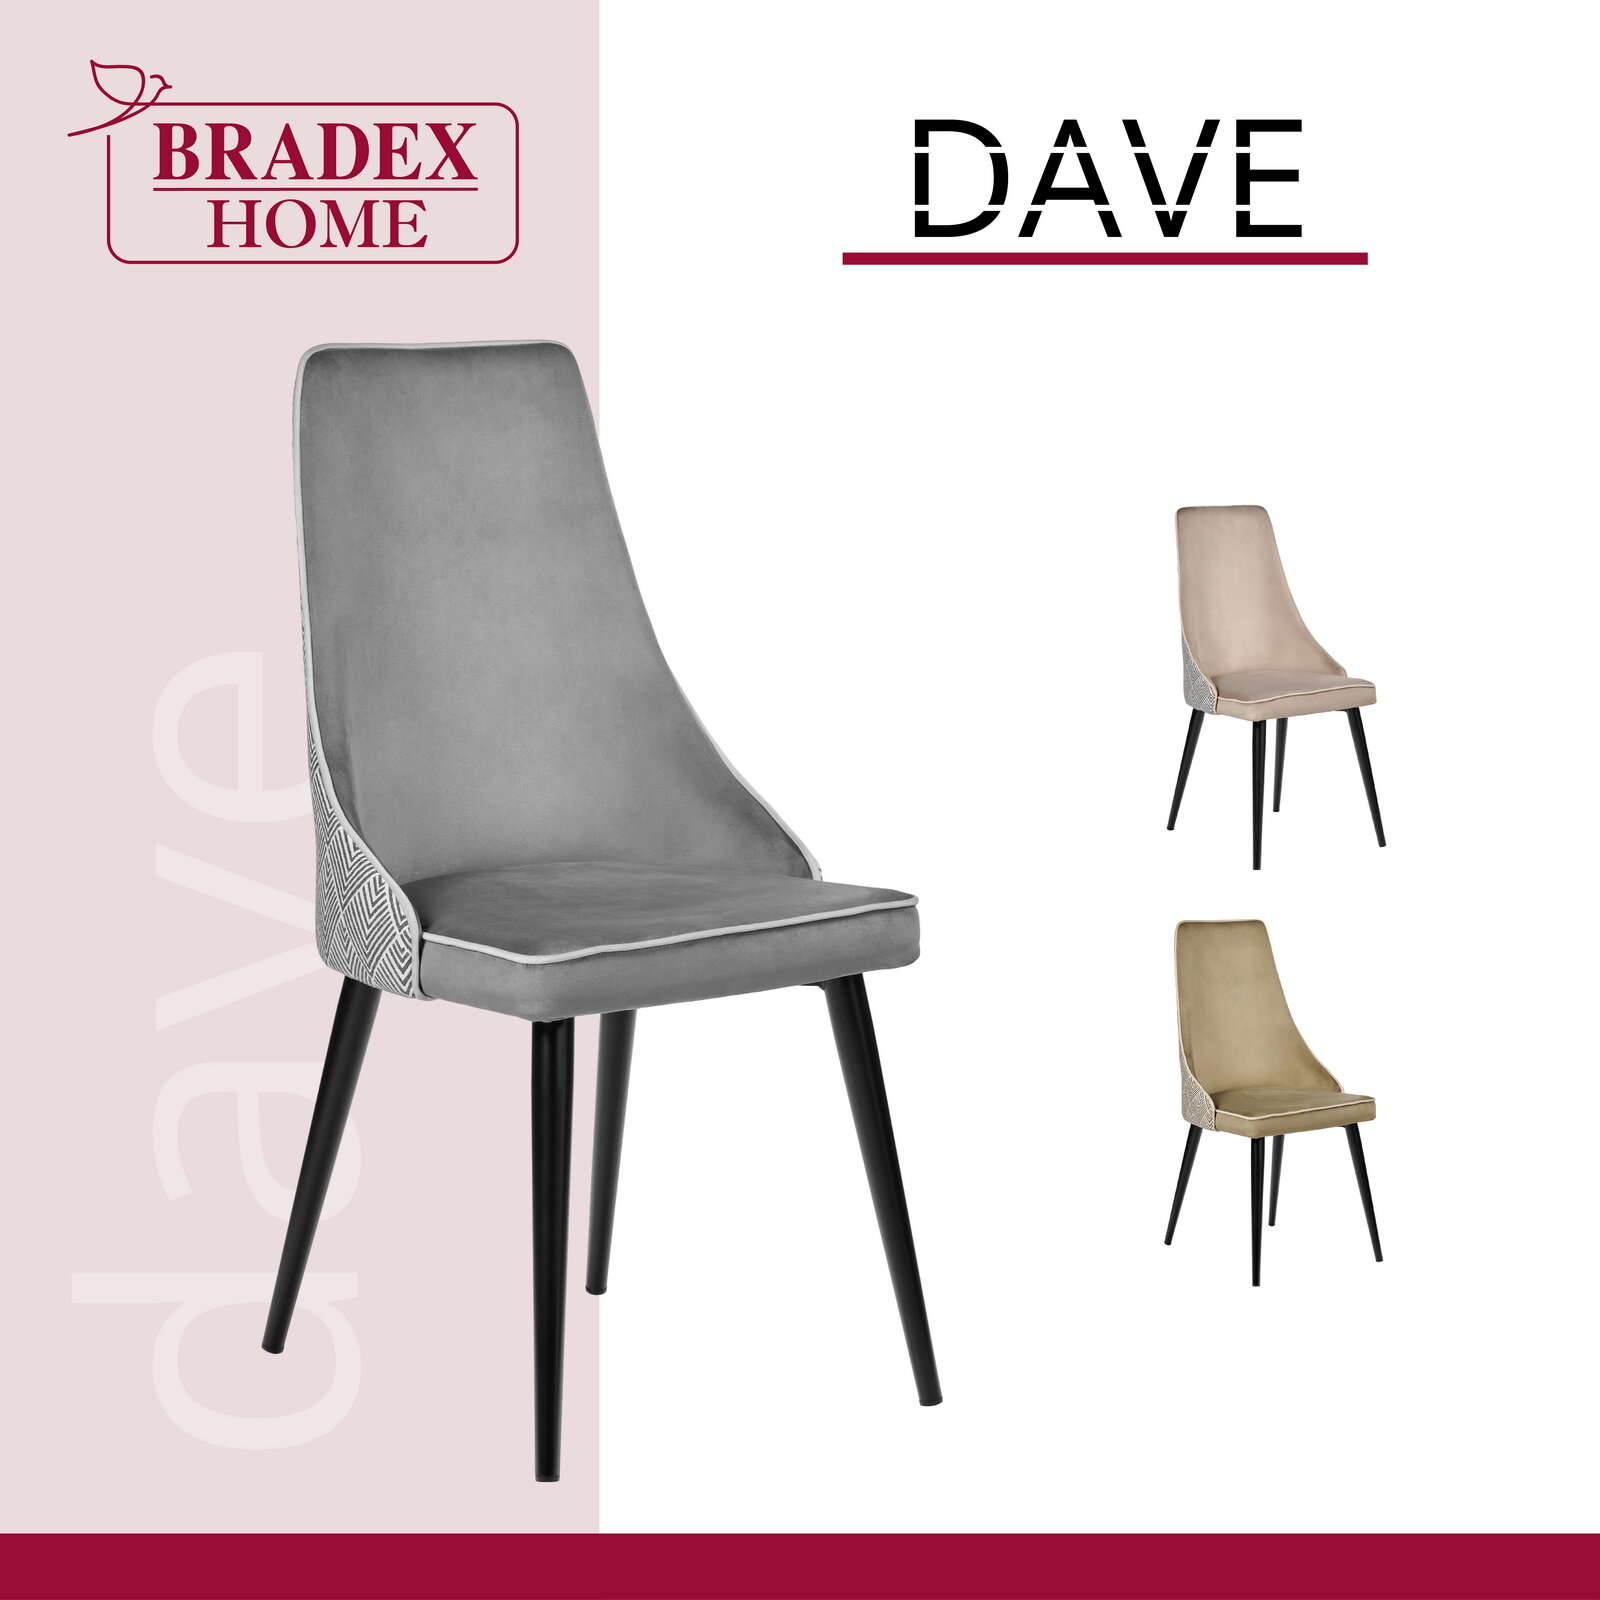 Стул для дома Dave серый / Стулья для кухни / Кухонные стулья со спинкой / Стул кресло / Кресло на балкон / Стулья для гостиной / Мебель лофт